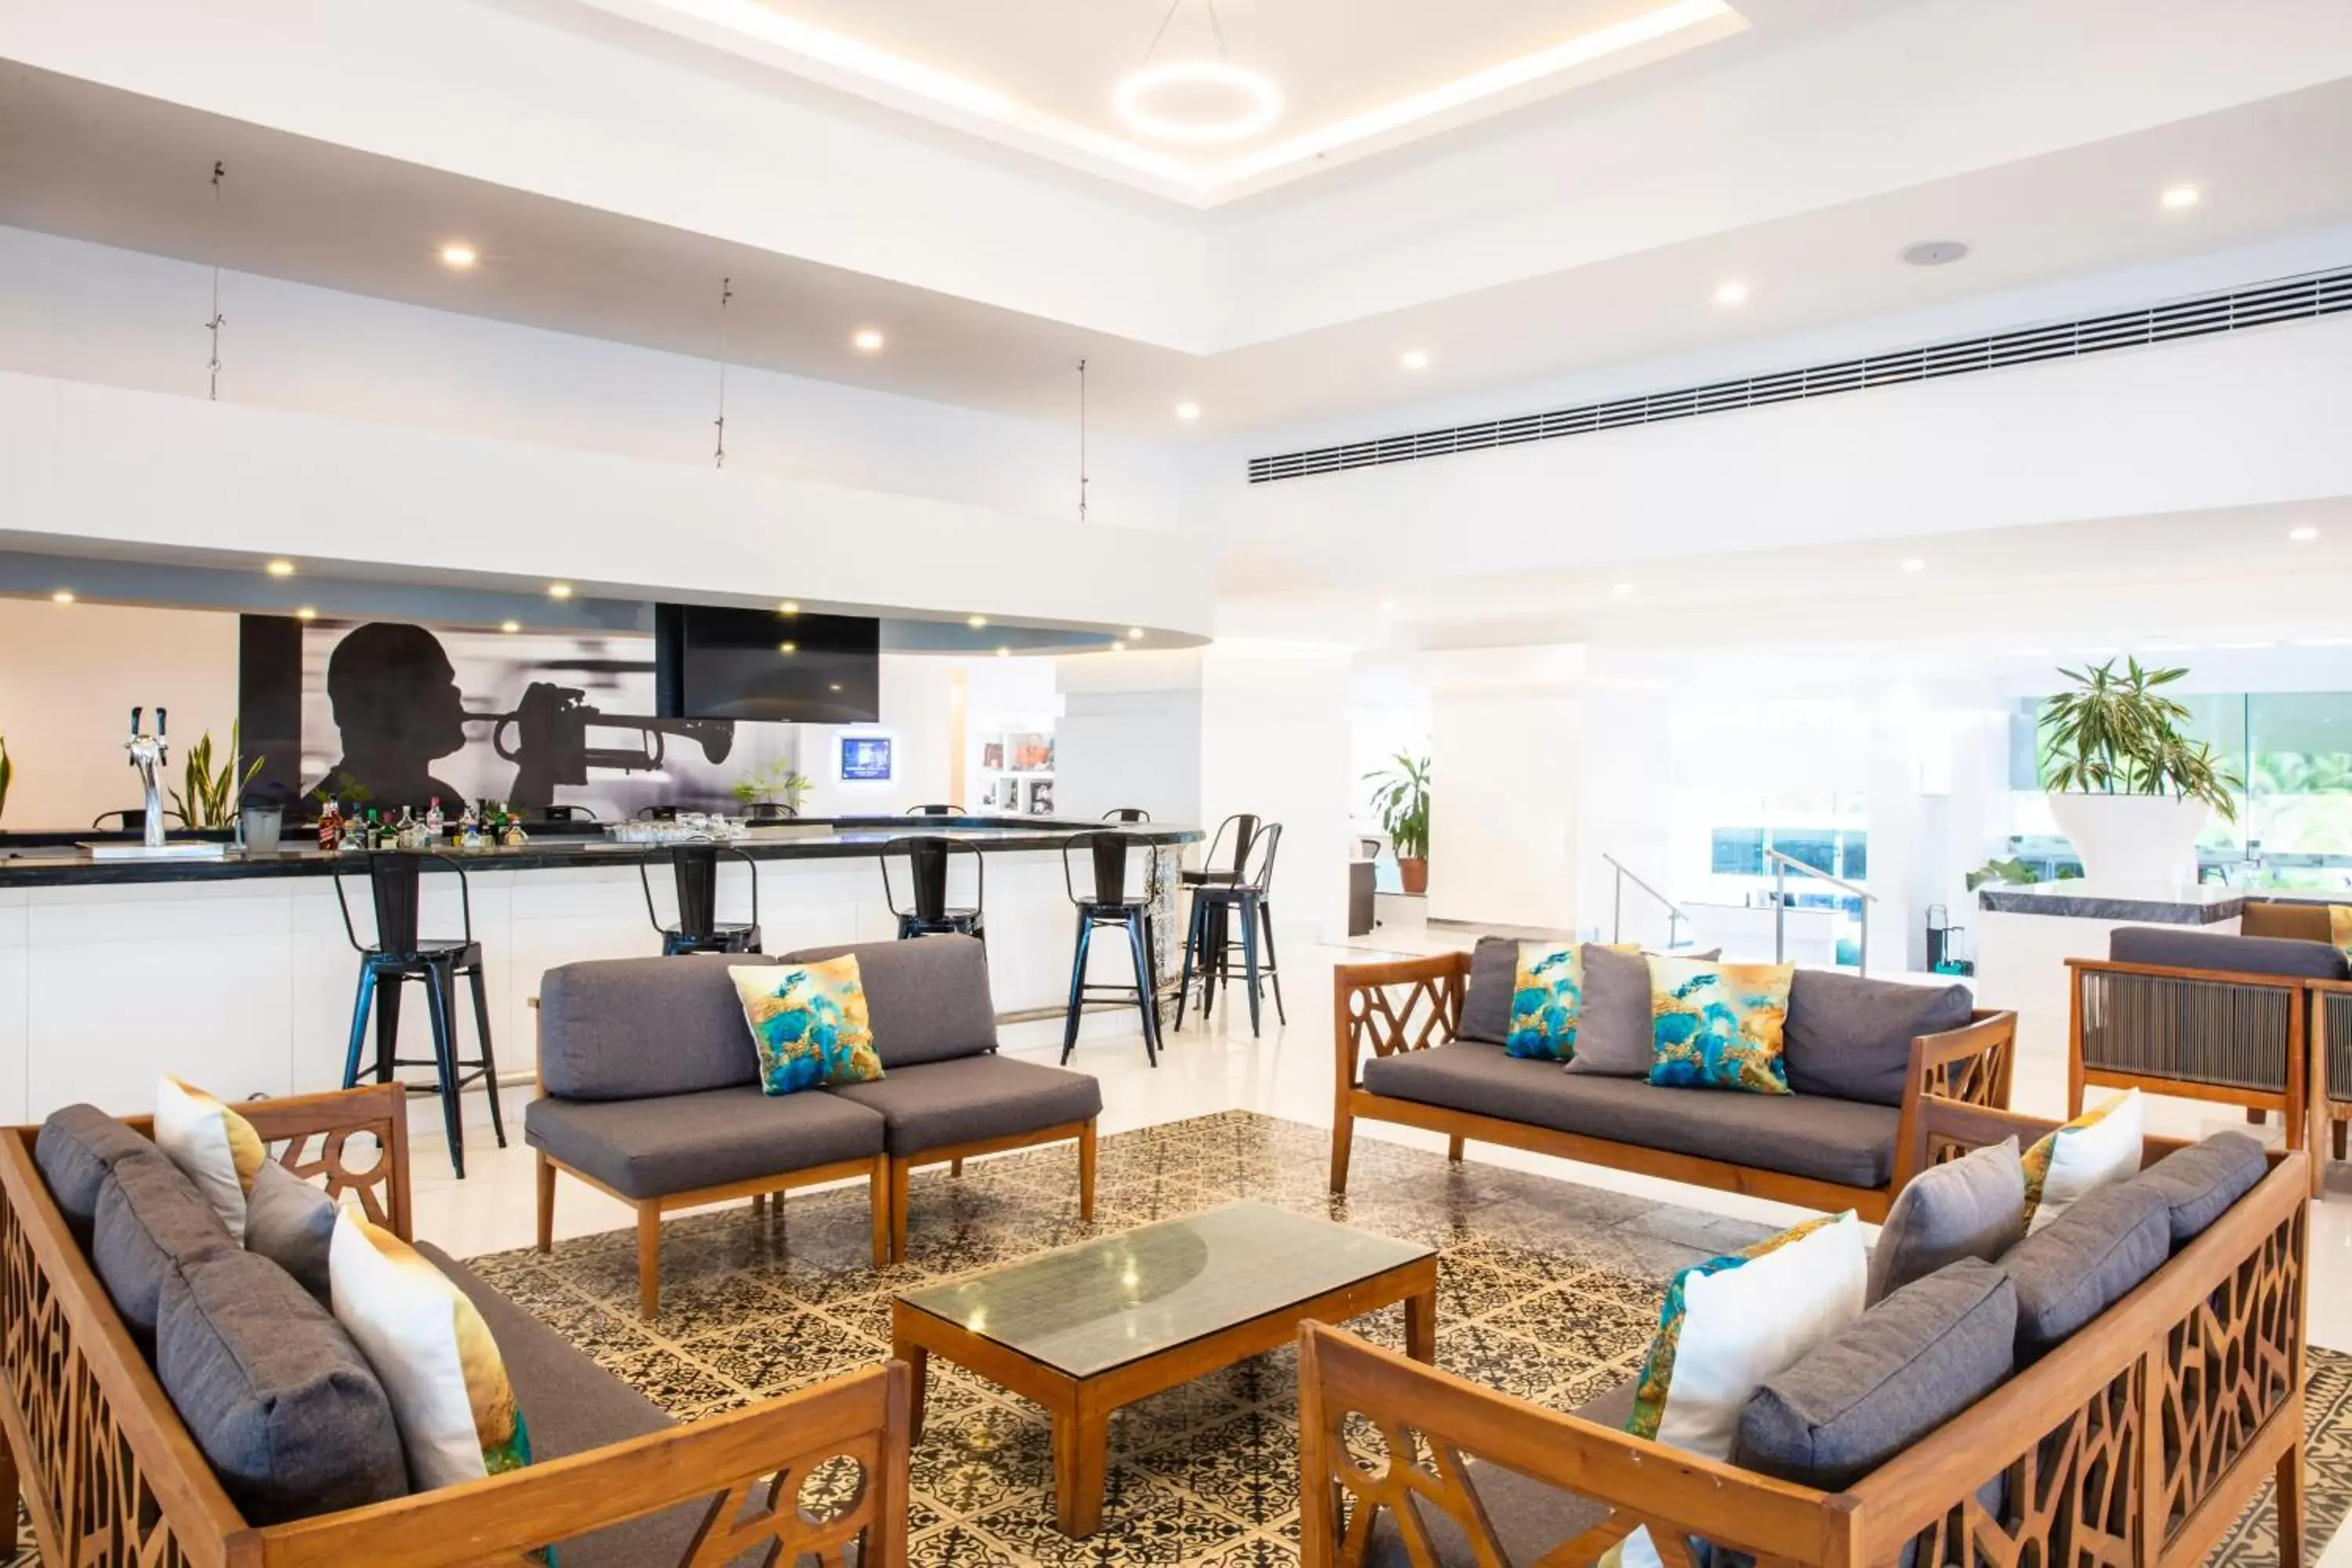 Lounge or bar, Lobby/Reception in Krystal Cancun